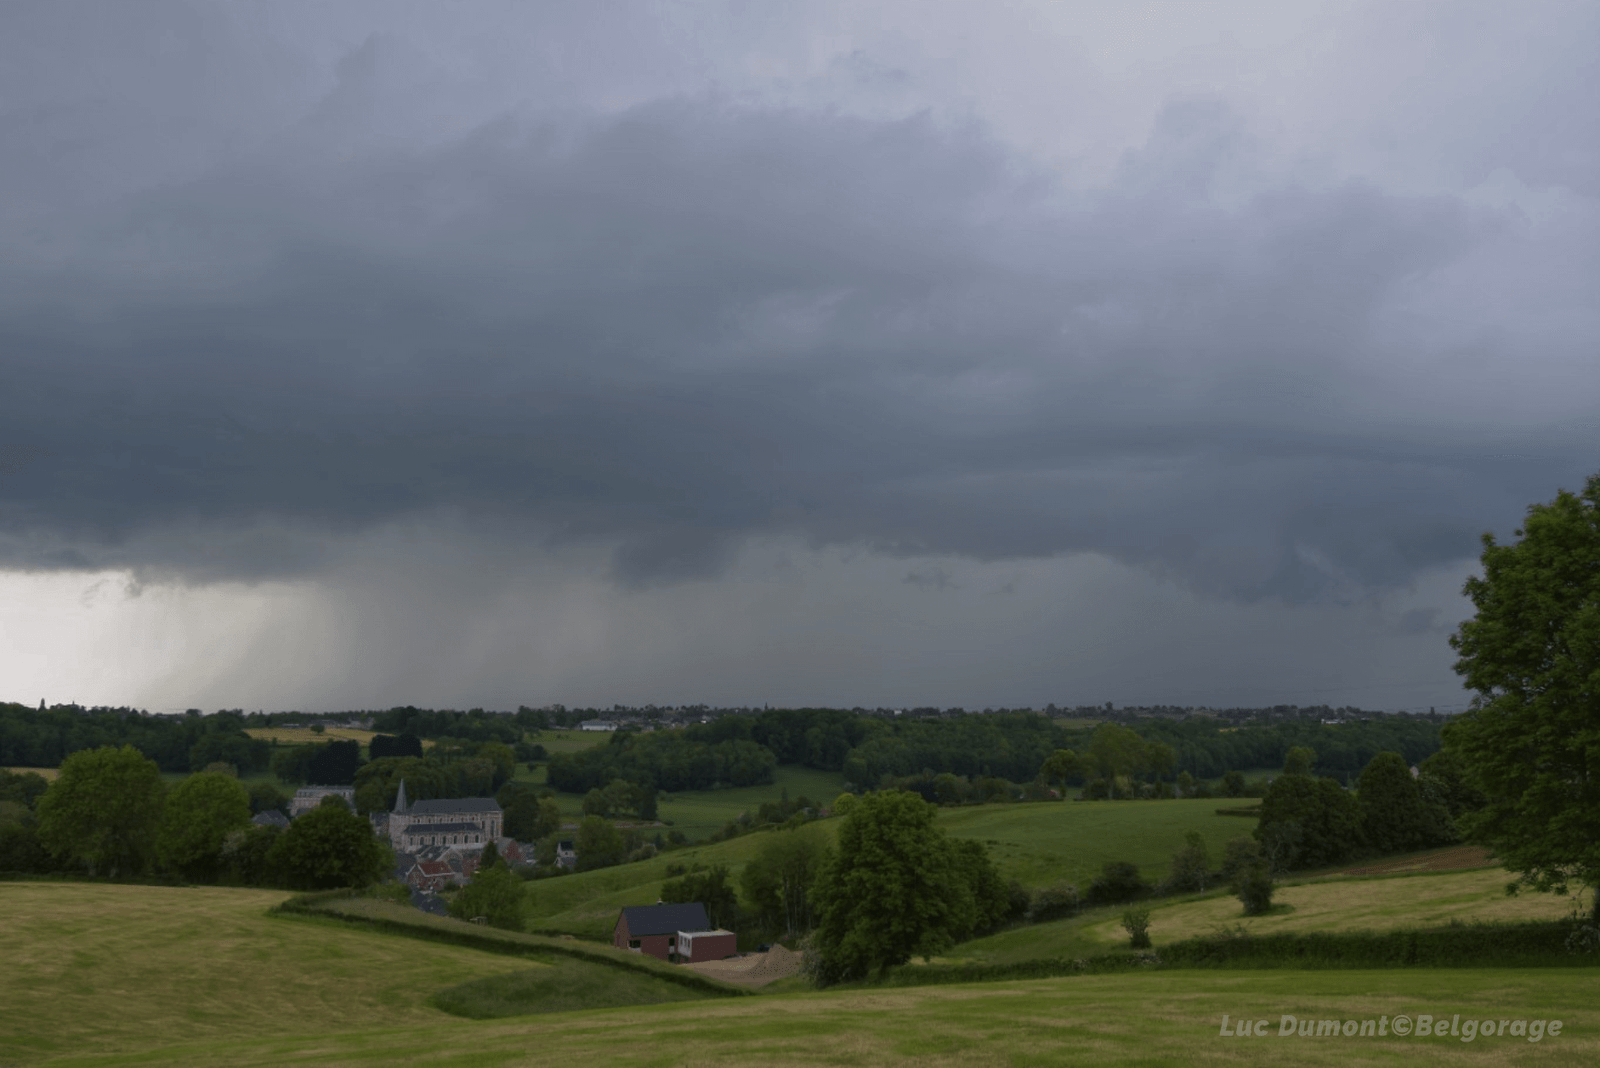 Cellule orageuse sur le Pays de Herve, en province de Liège, vue depuis la région de Soiron le 3 juin 2021 vers 17h30.